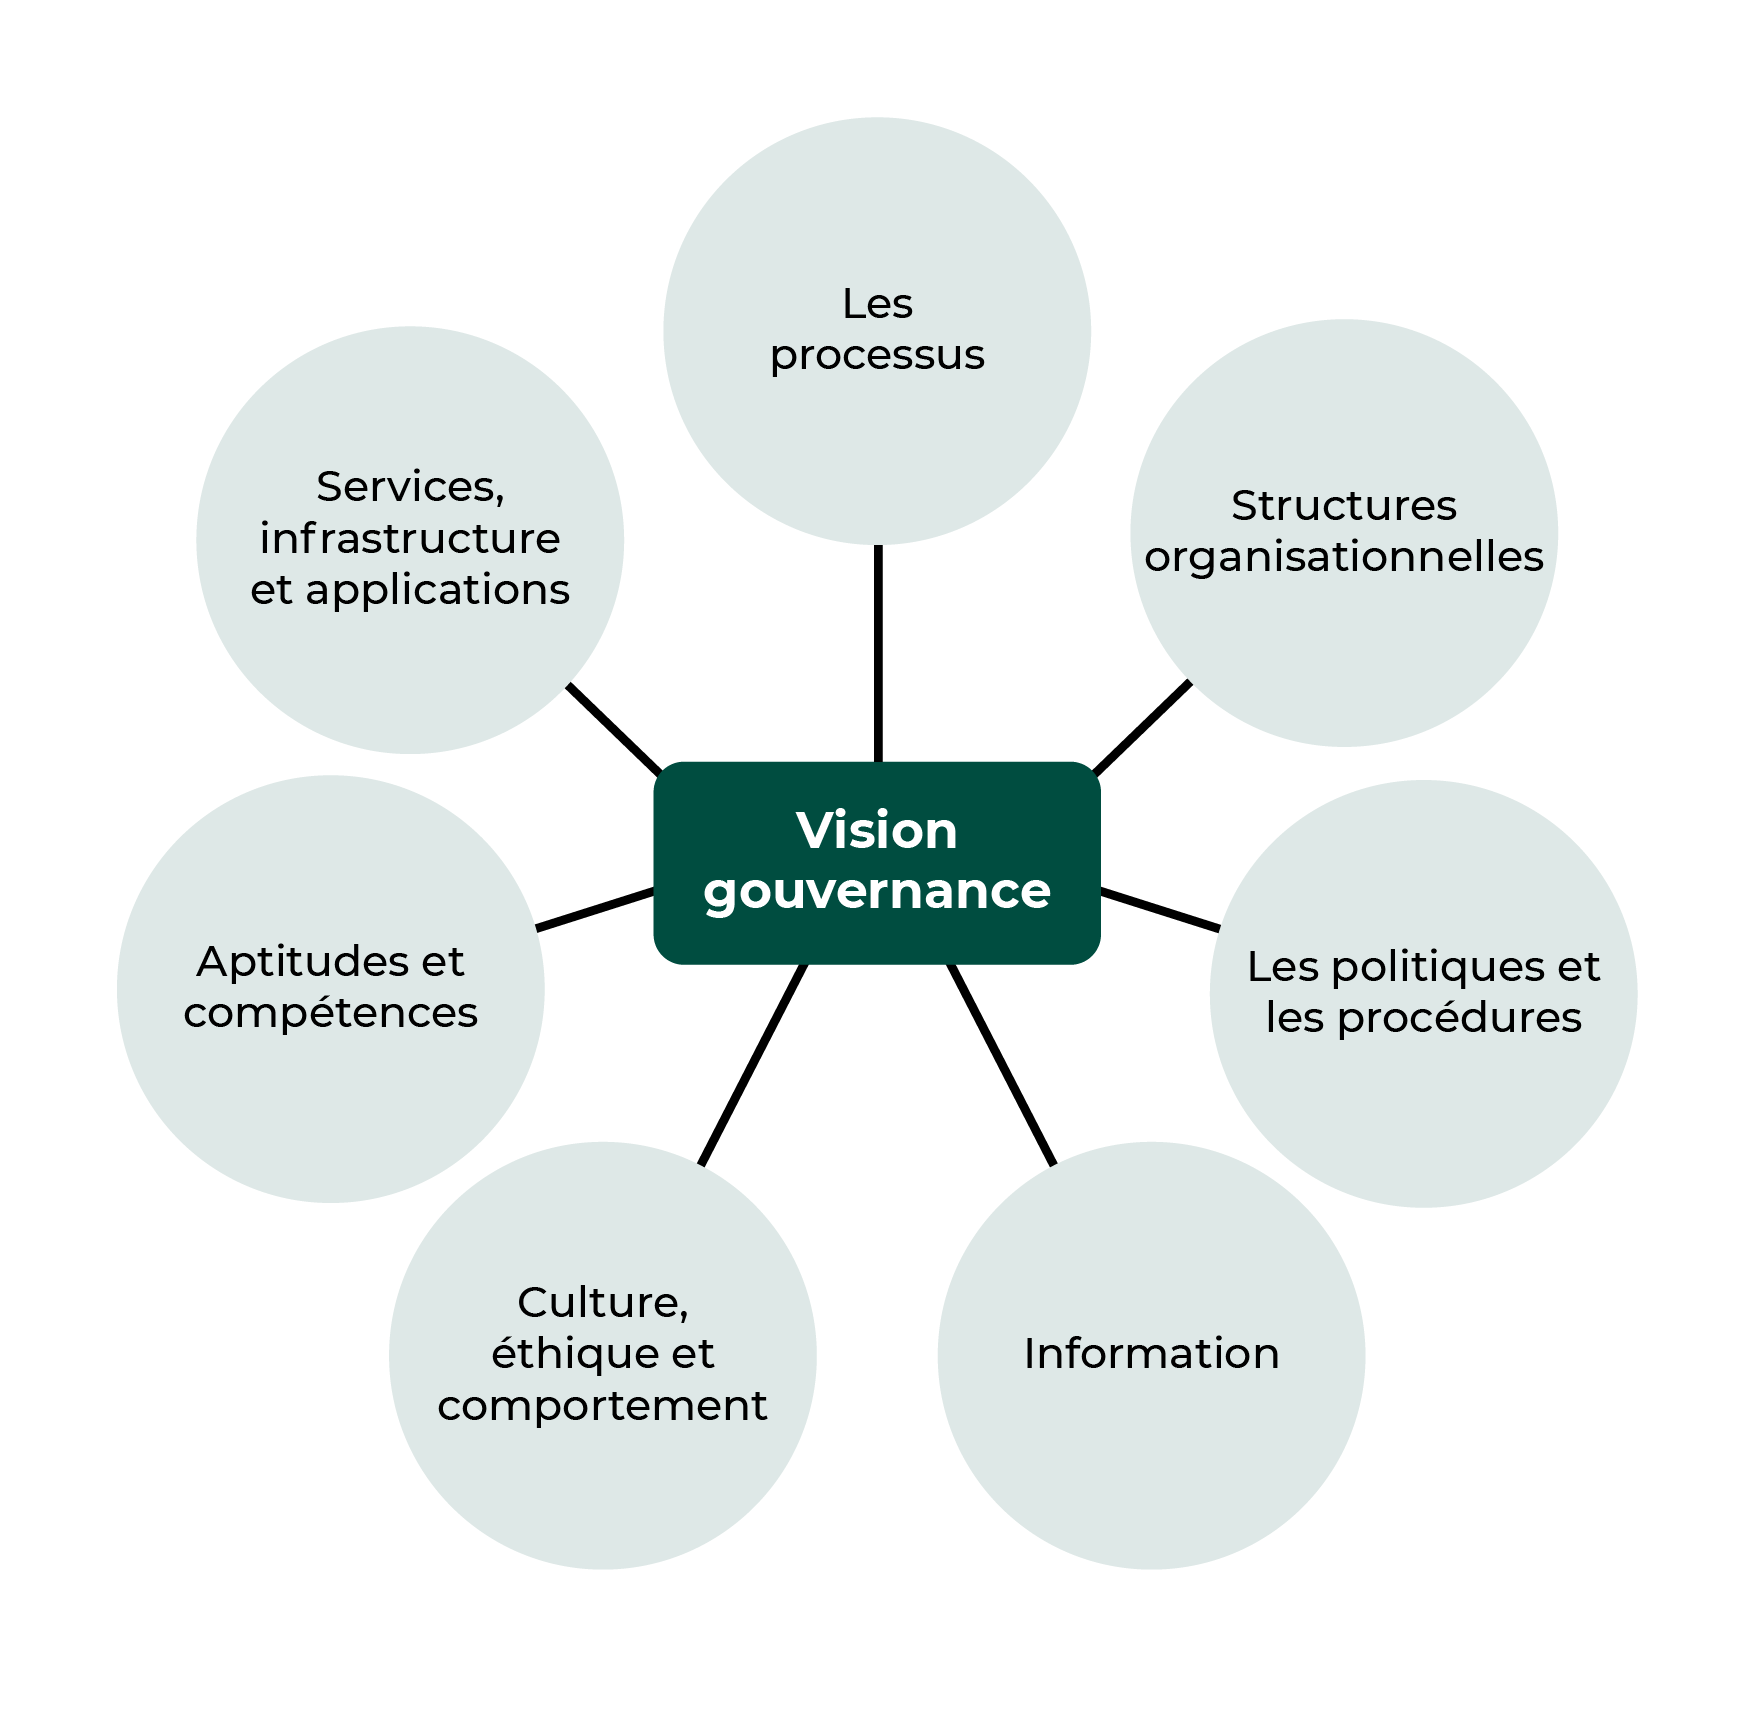 Au centre, la vision gouvernance est reliée aux structures organisationnelles, aux politiques, à l'information, à la culture, aux compétences, aux services et aux processus